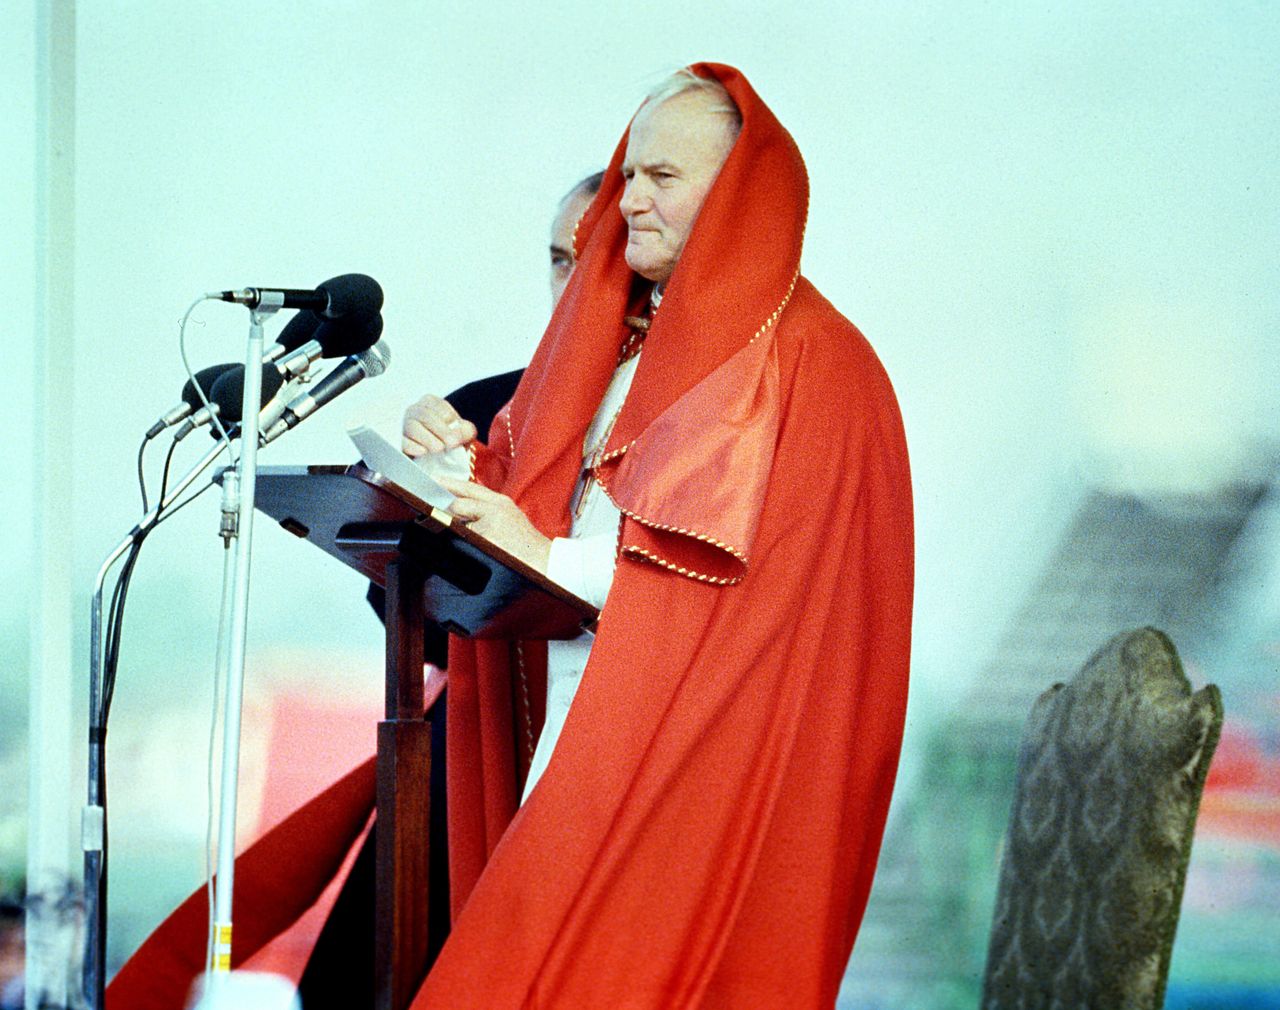  Pope John Paul II speaking at Dublin Airport in 1979.